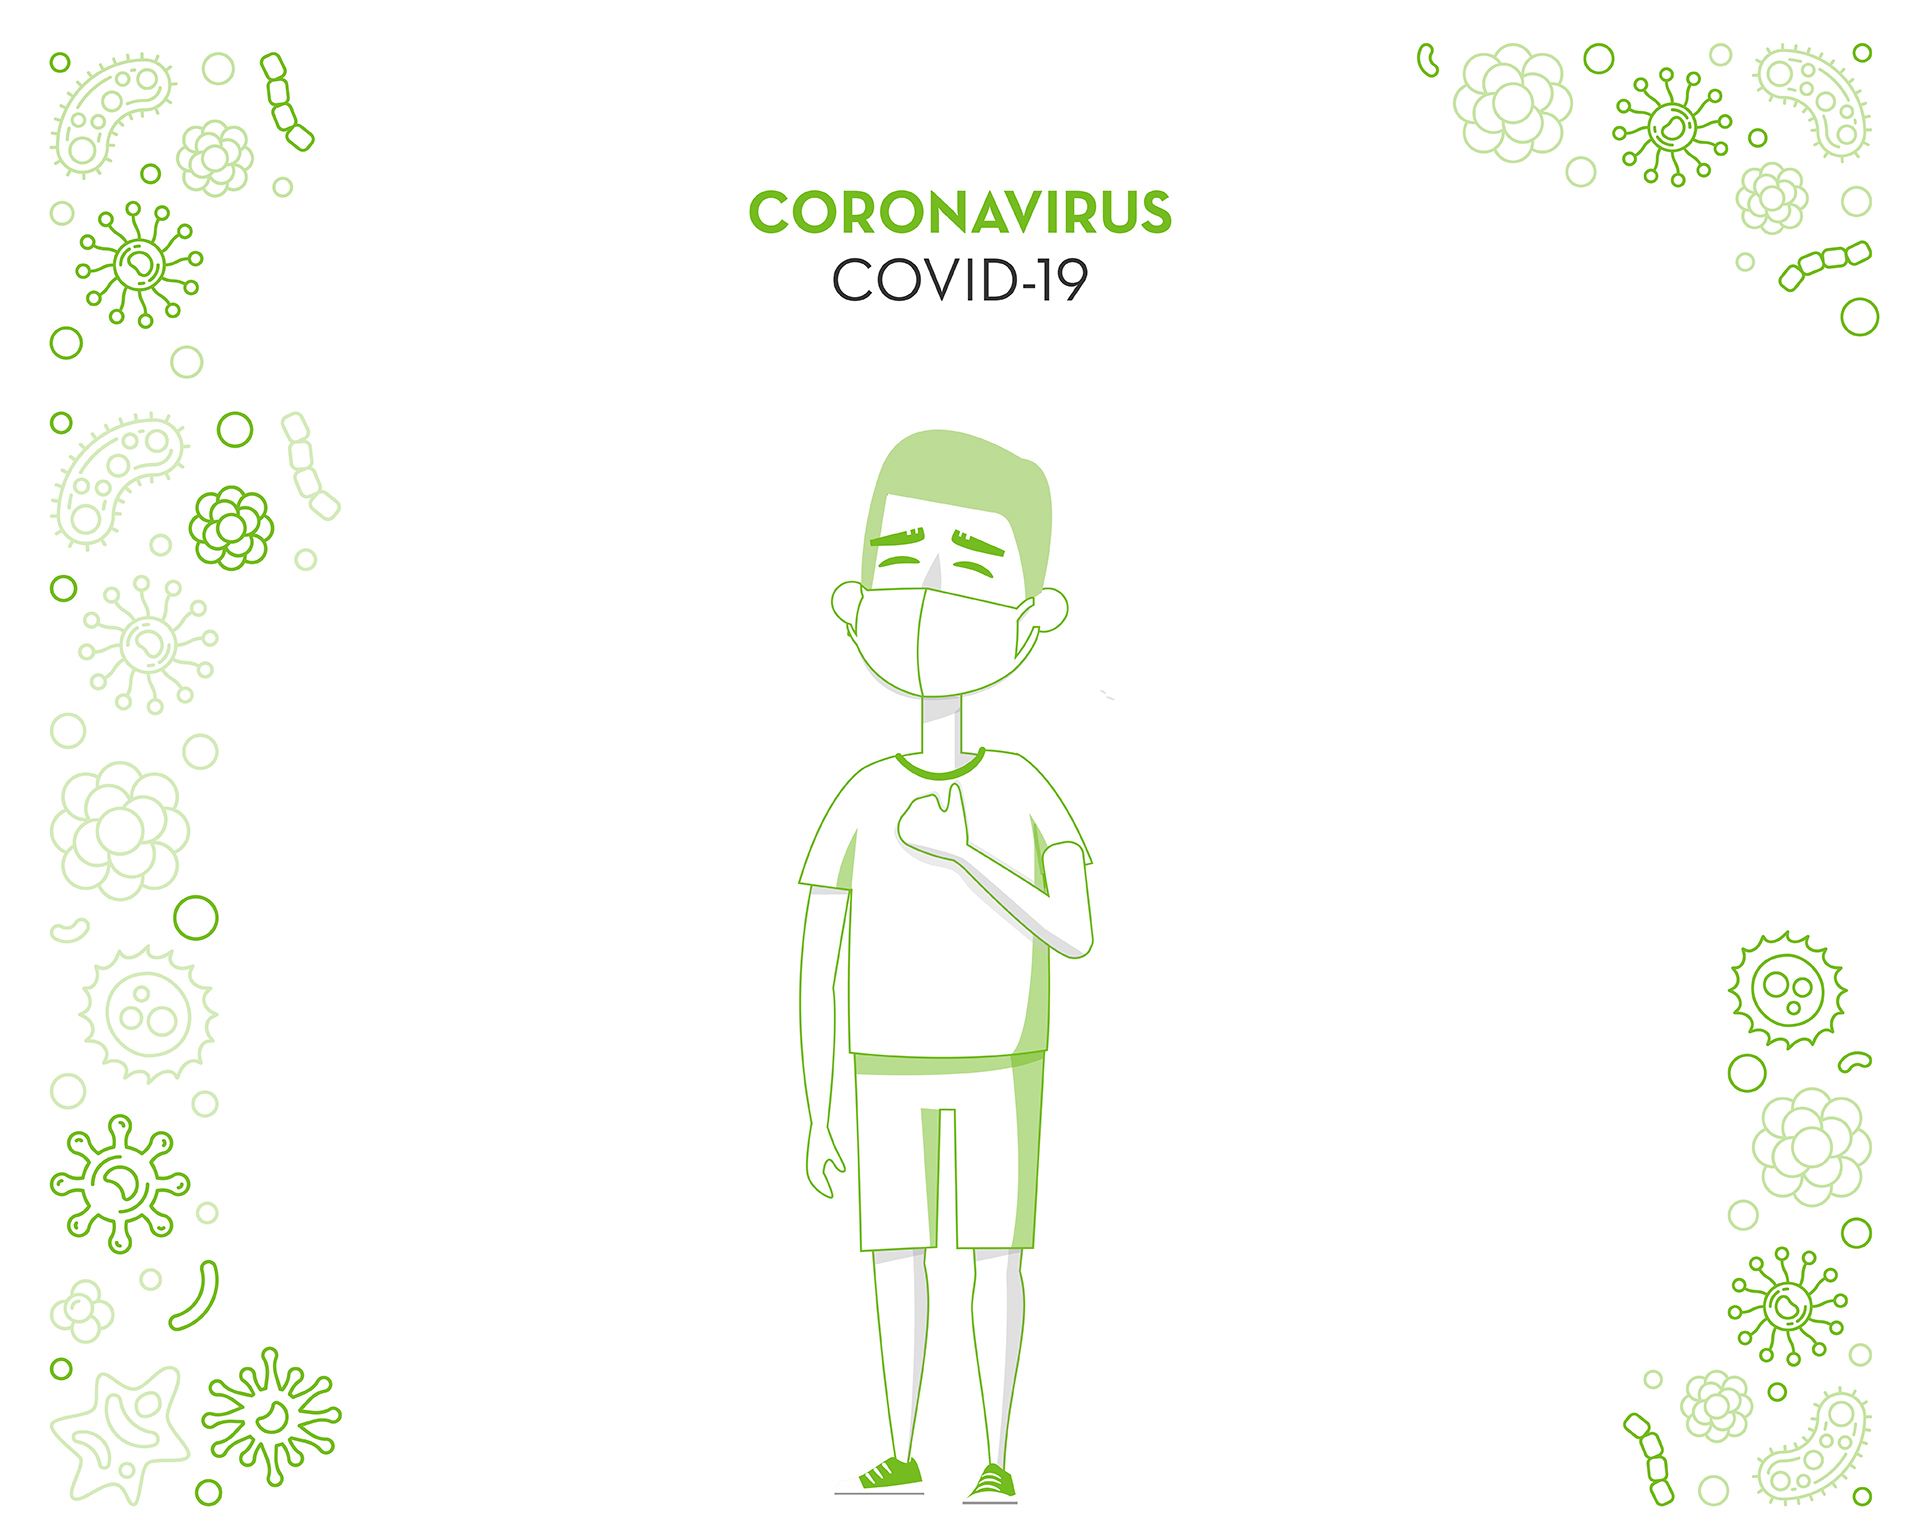 ¿Qué es el Coronavirus?